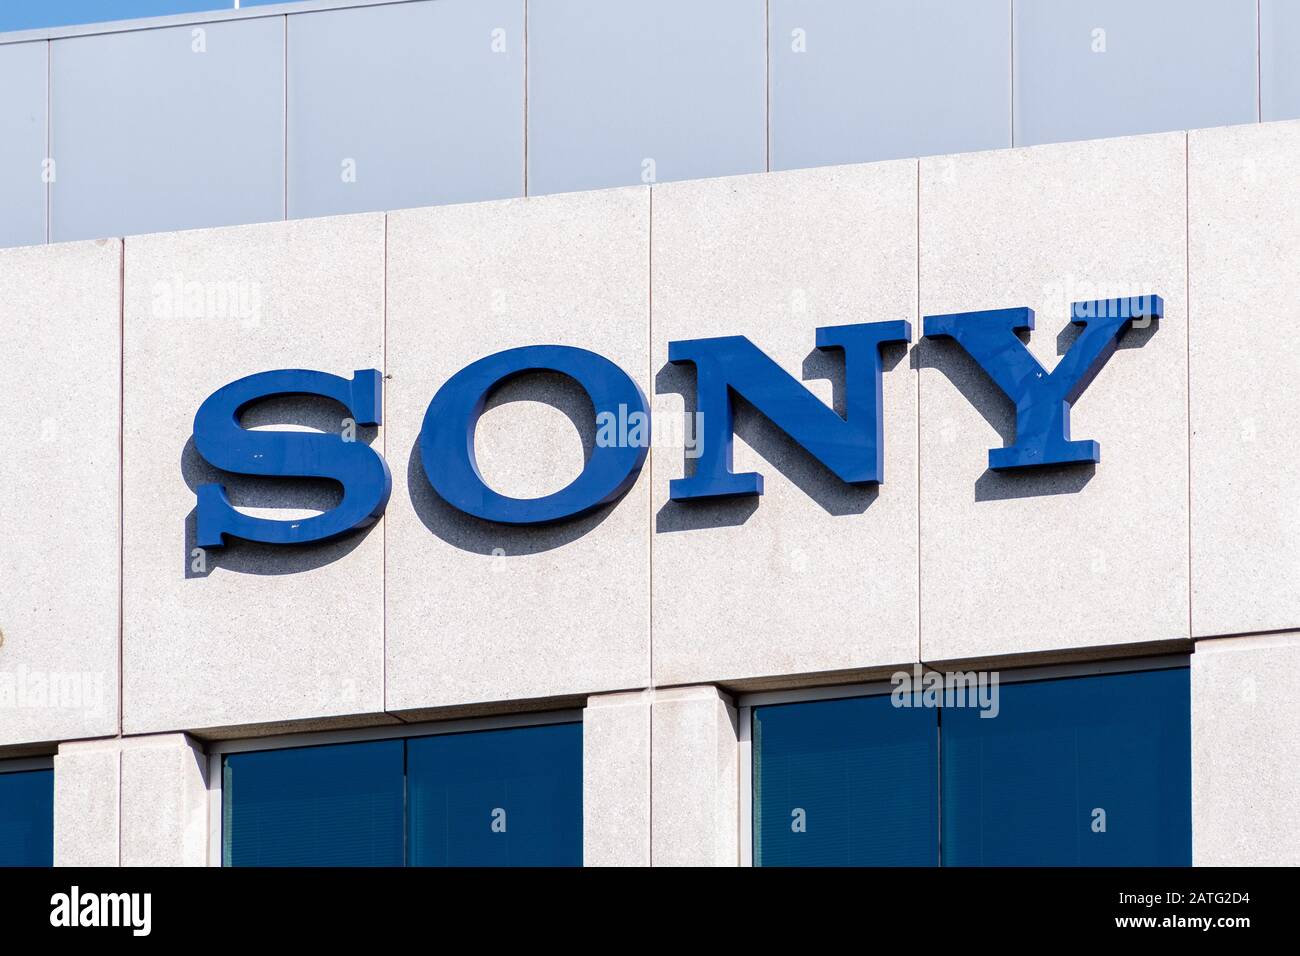 31 de enero de 2020 San Jose / CA / USA - firma de Sony en las oficinas de Sony Electronics Inc en Silicon Valley; Sony Corporation es una multinacional japonesa congestionar Foto de stock